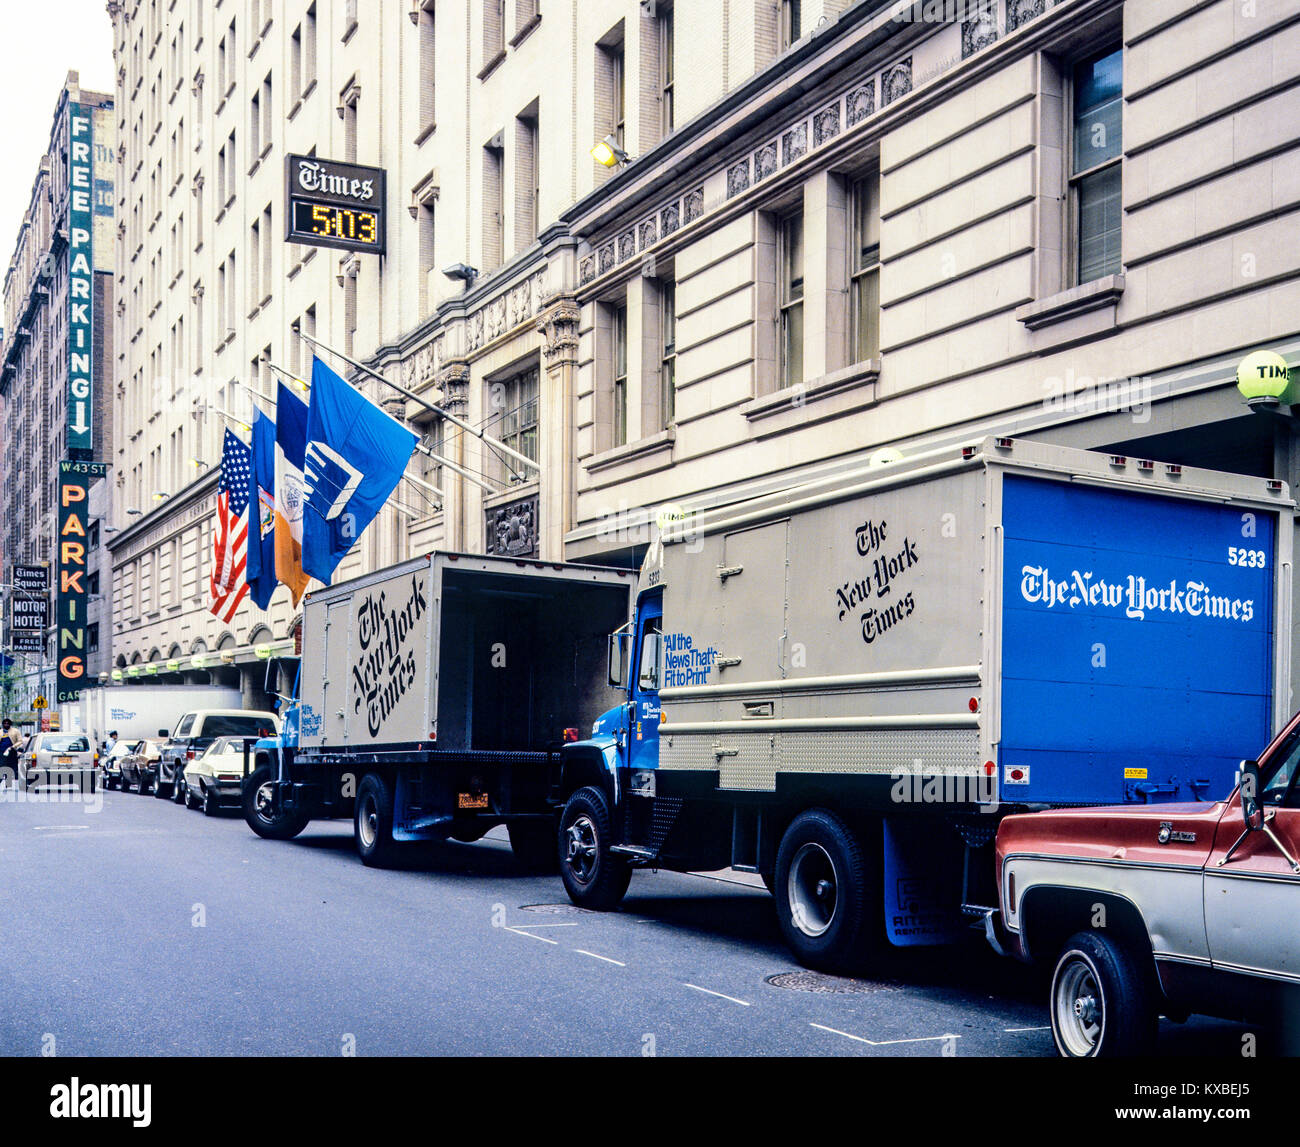 New York 1980s, The New York Times, camions de livraison de journaux garés dans la rue, 229 West 43rd Street, Manhattan, New York City, NY, NYC, ÉTATS-UNIS, Banque D'Images